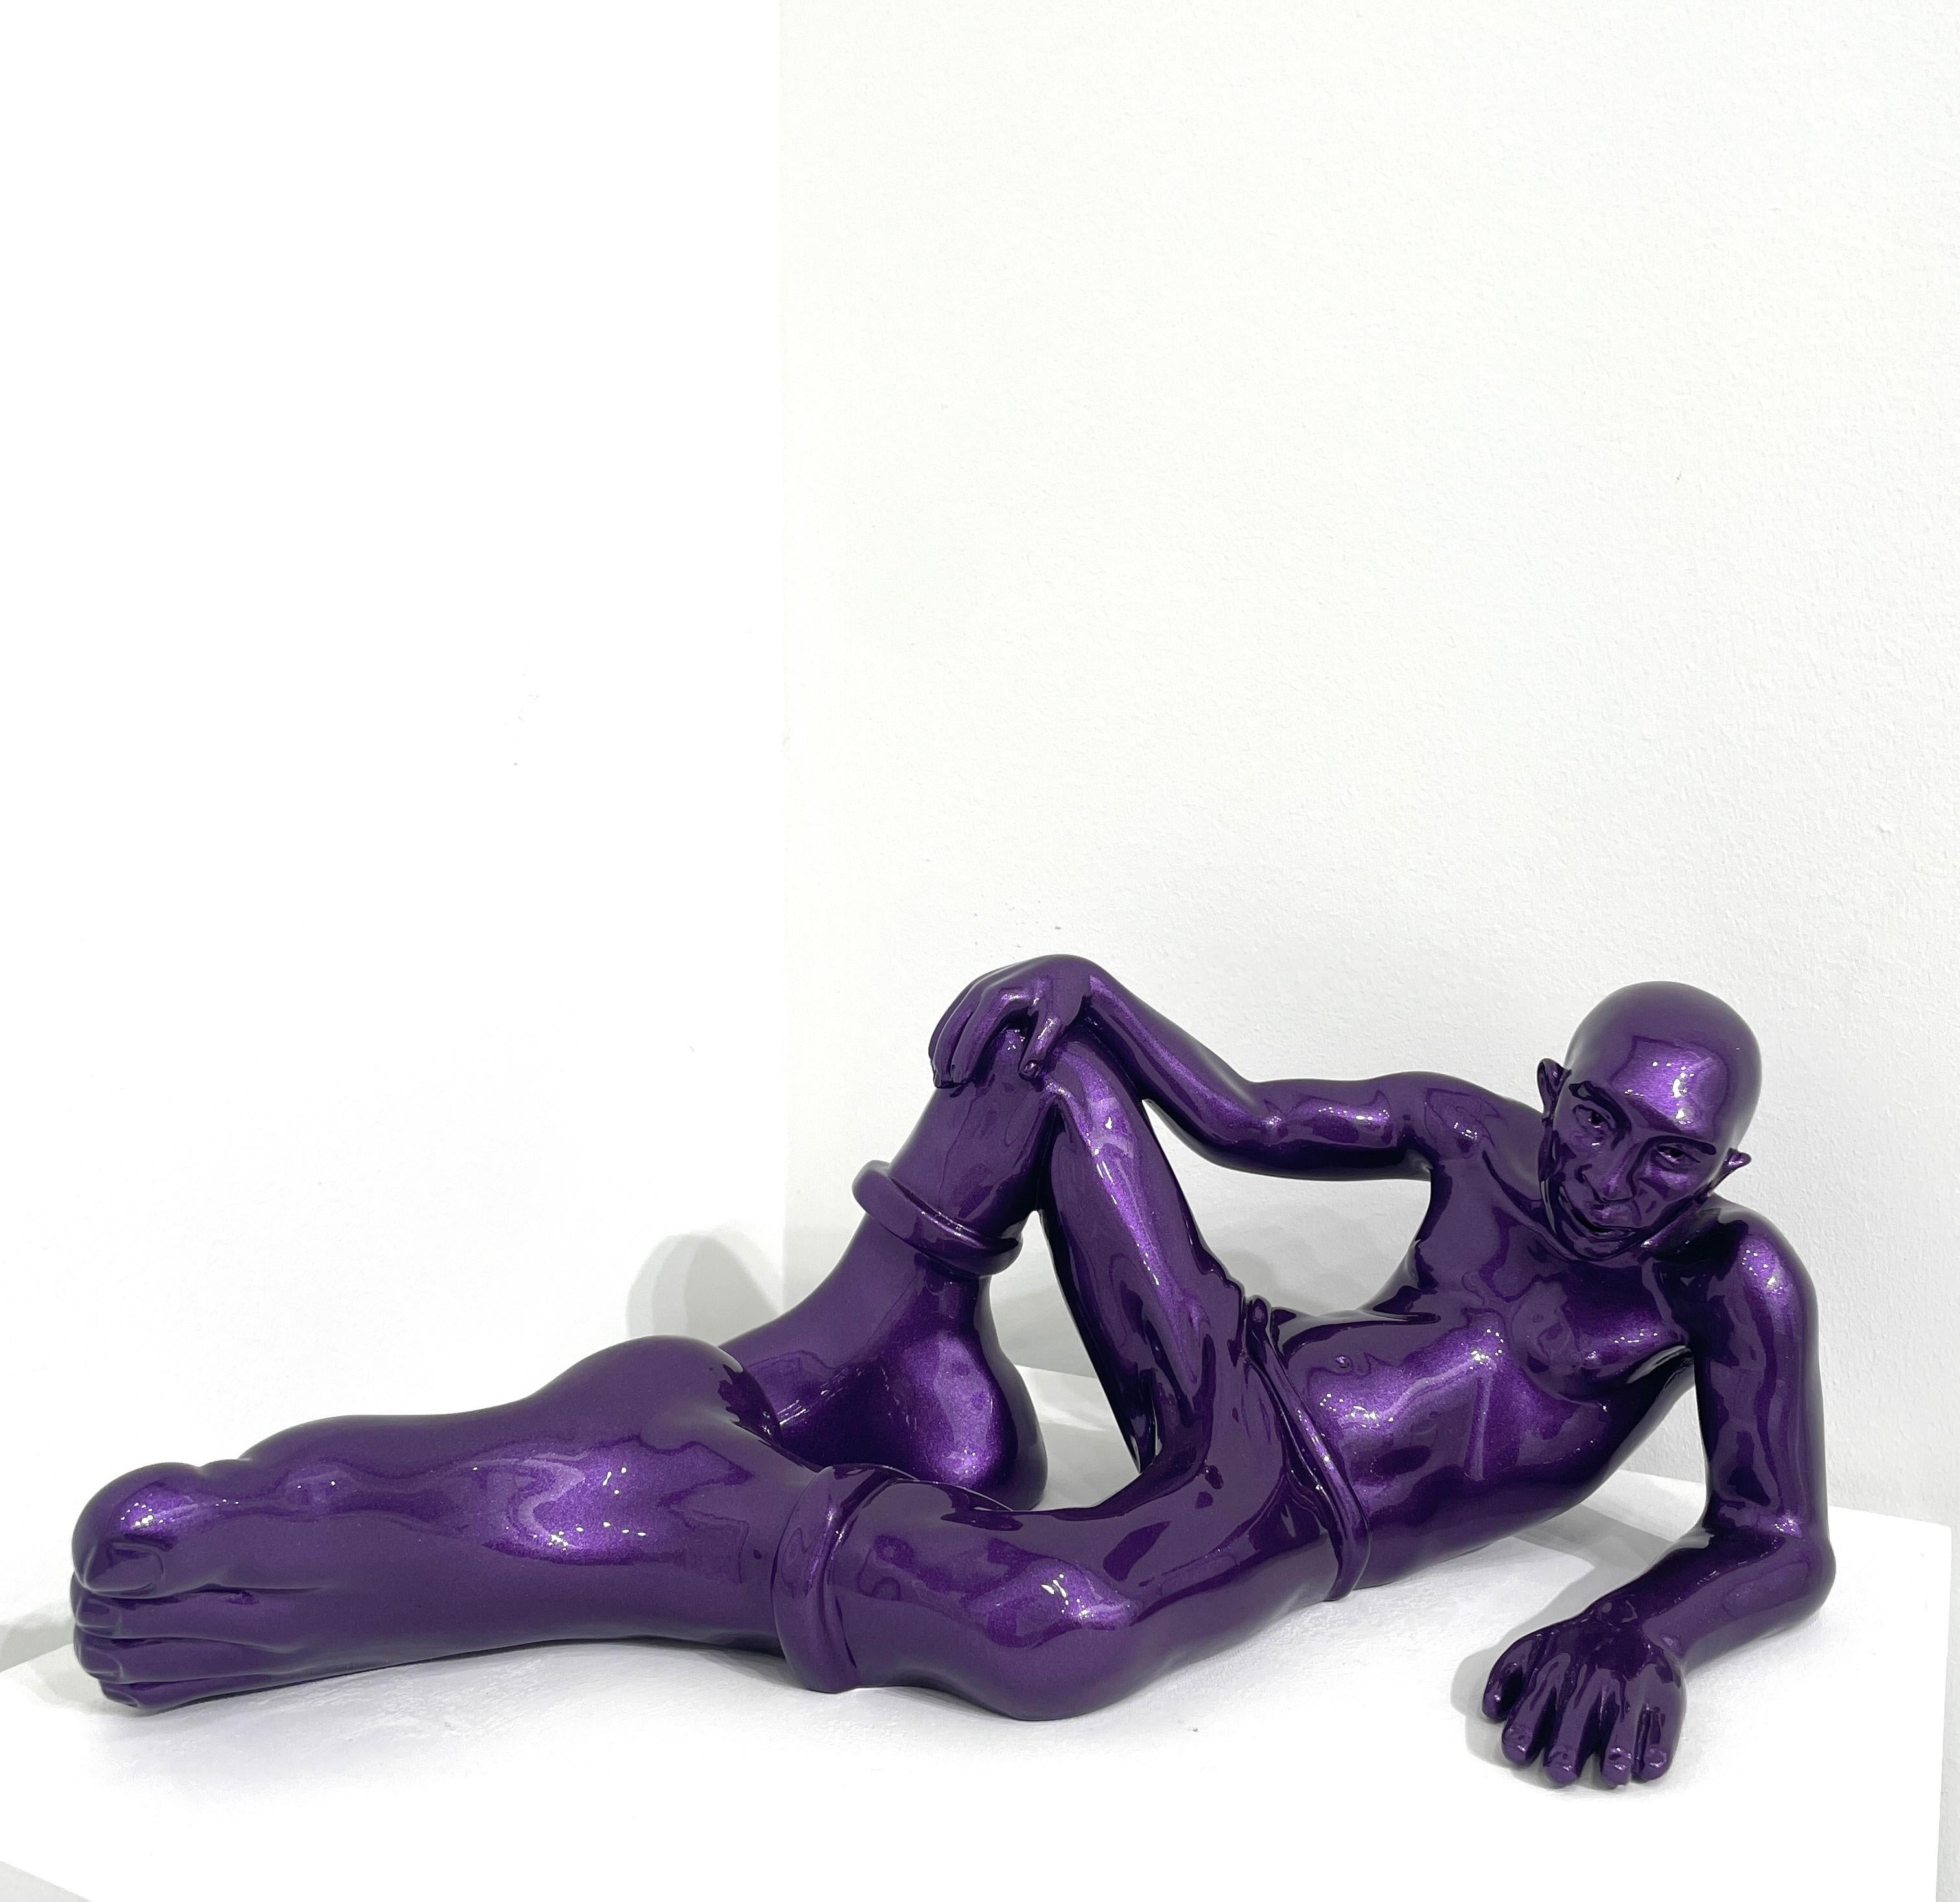 Coolfoot 50 - Contemporary Sculpture by Idan Zareski